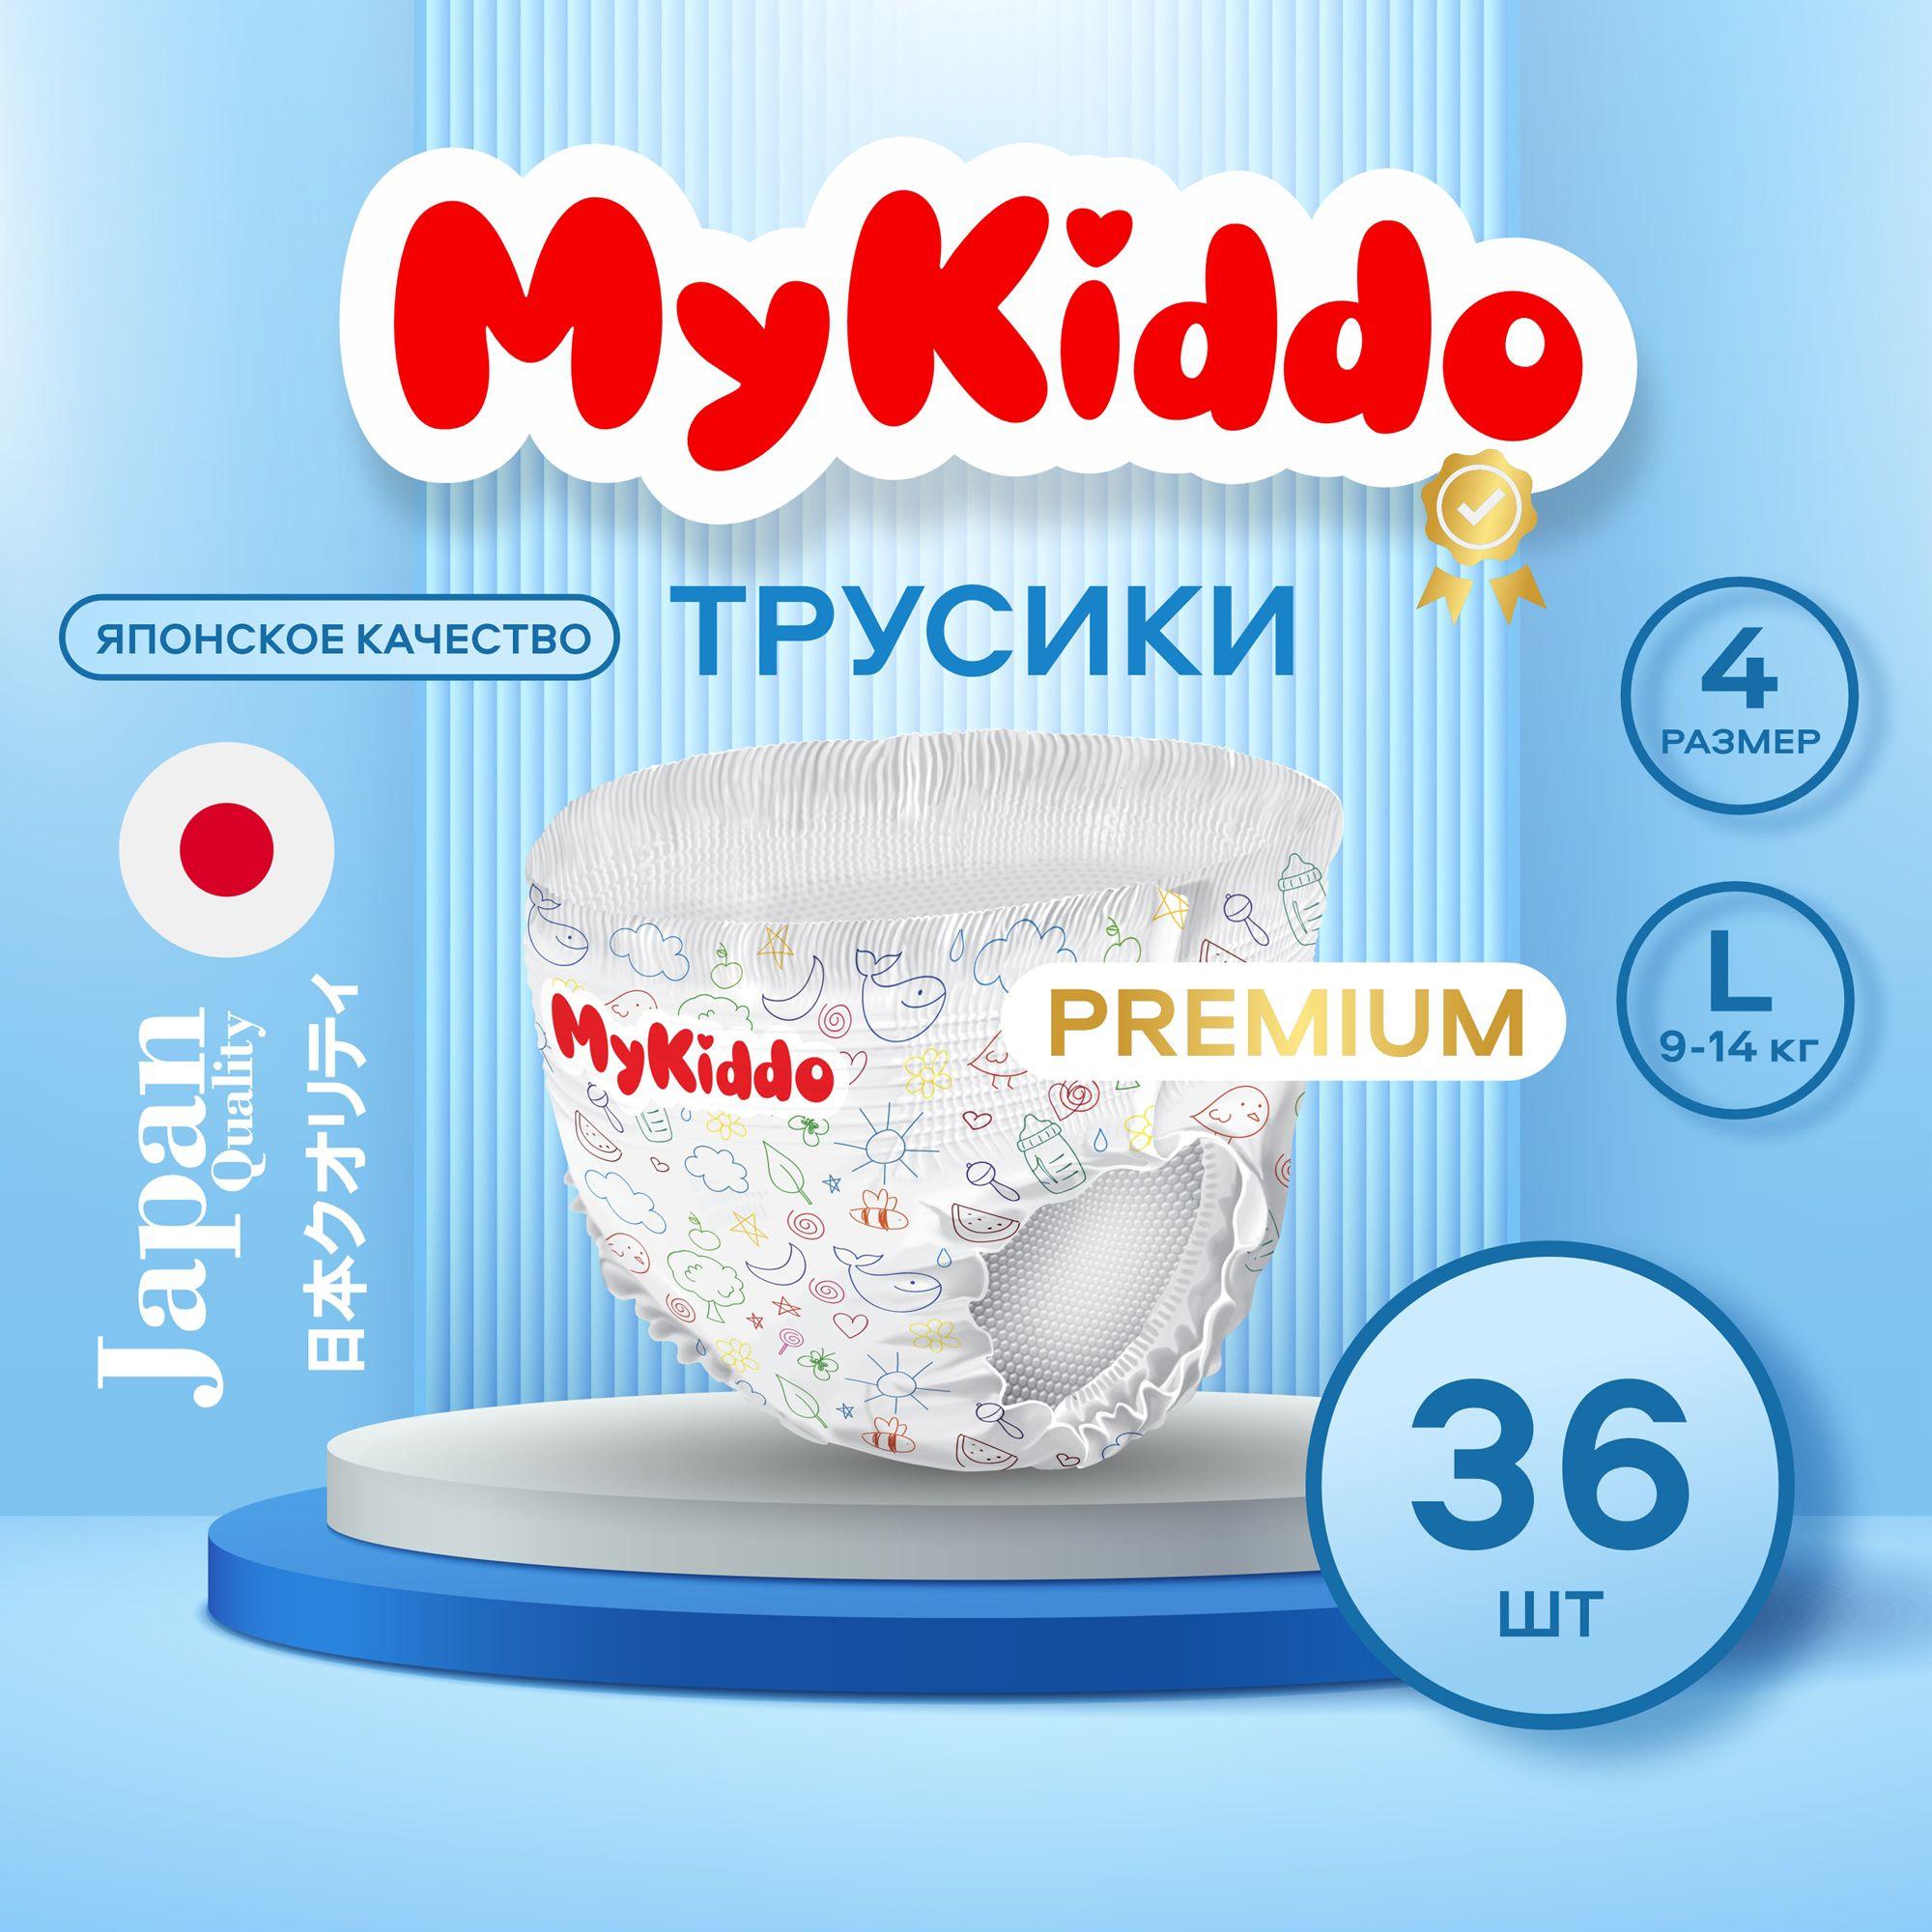 Подгузники трусики детские MyKiddo Premium размер 4 L, для детей весом 9-14 кг, в упаковке 36 шт.